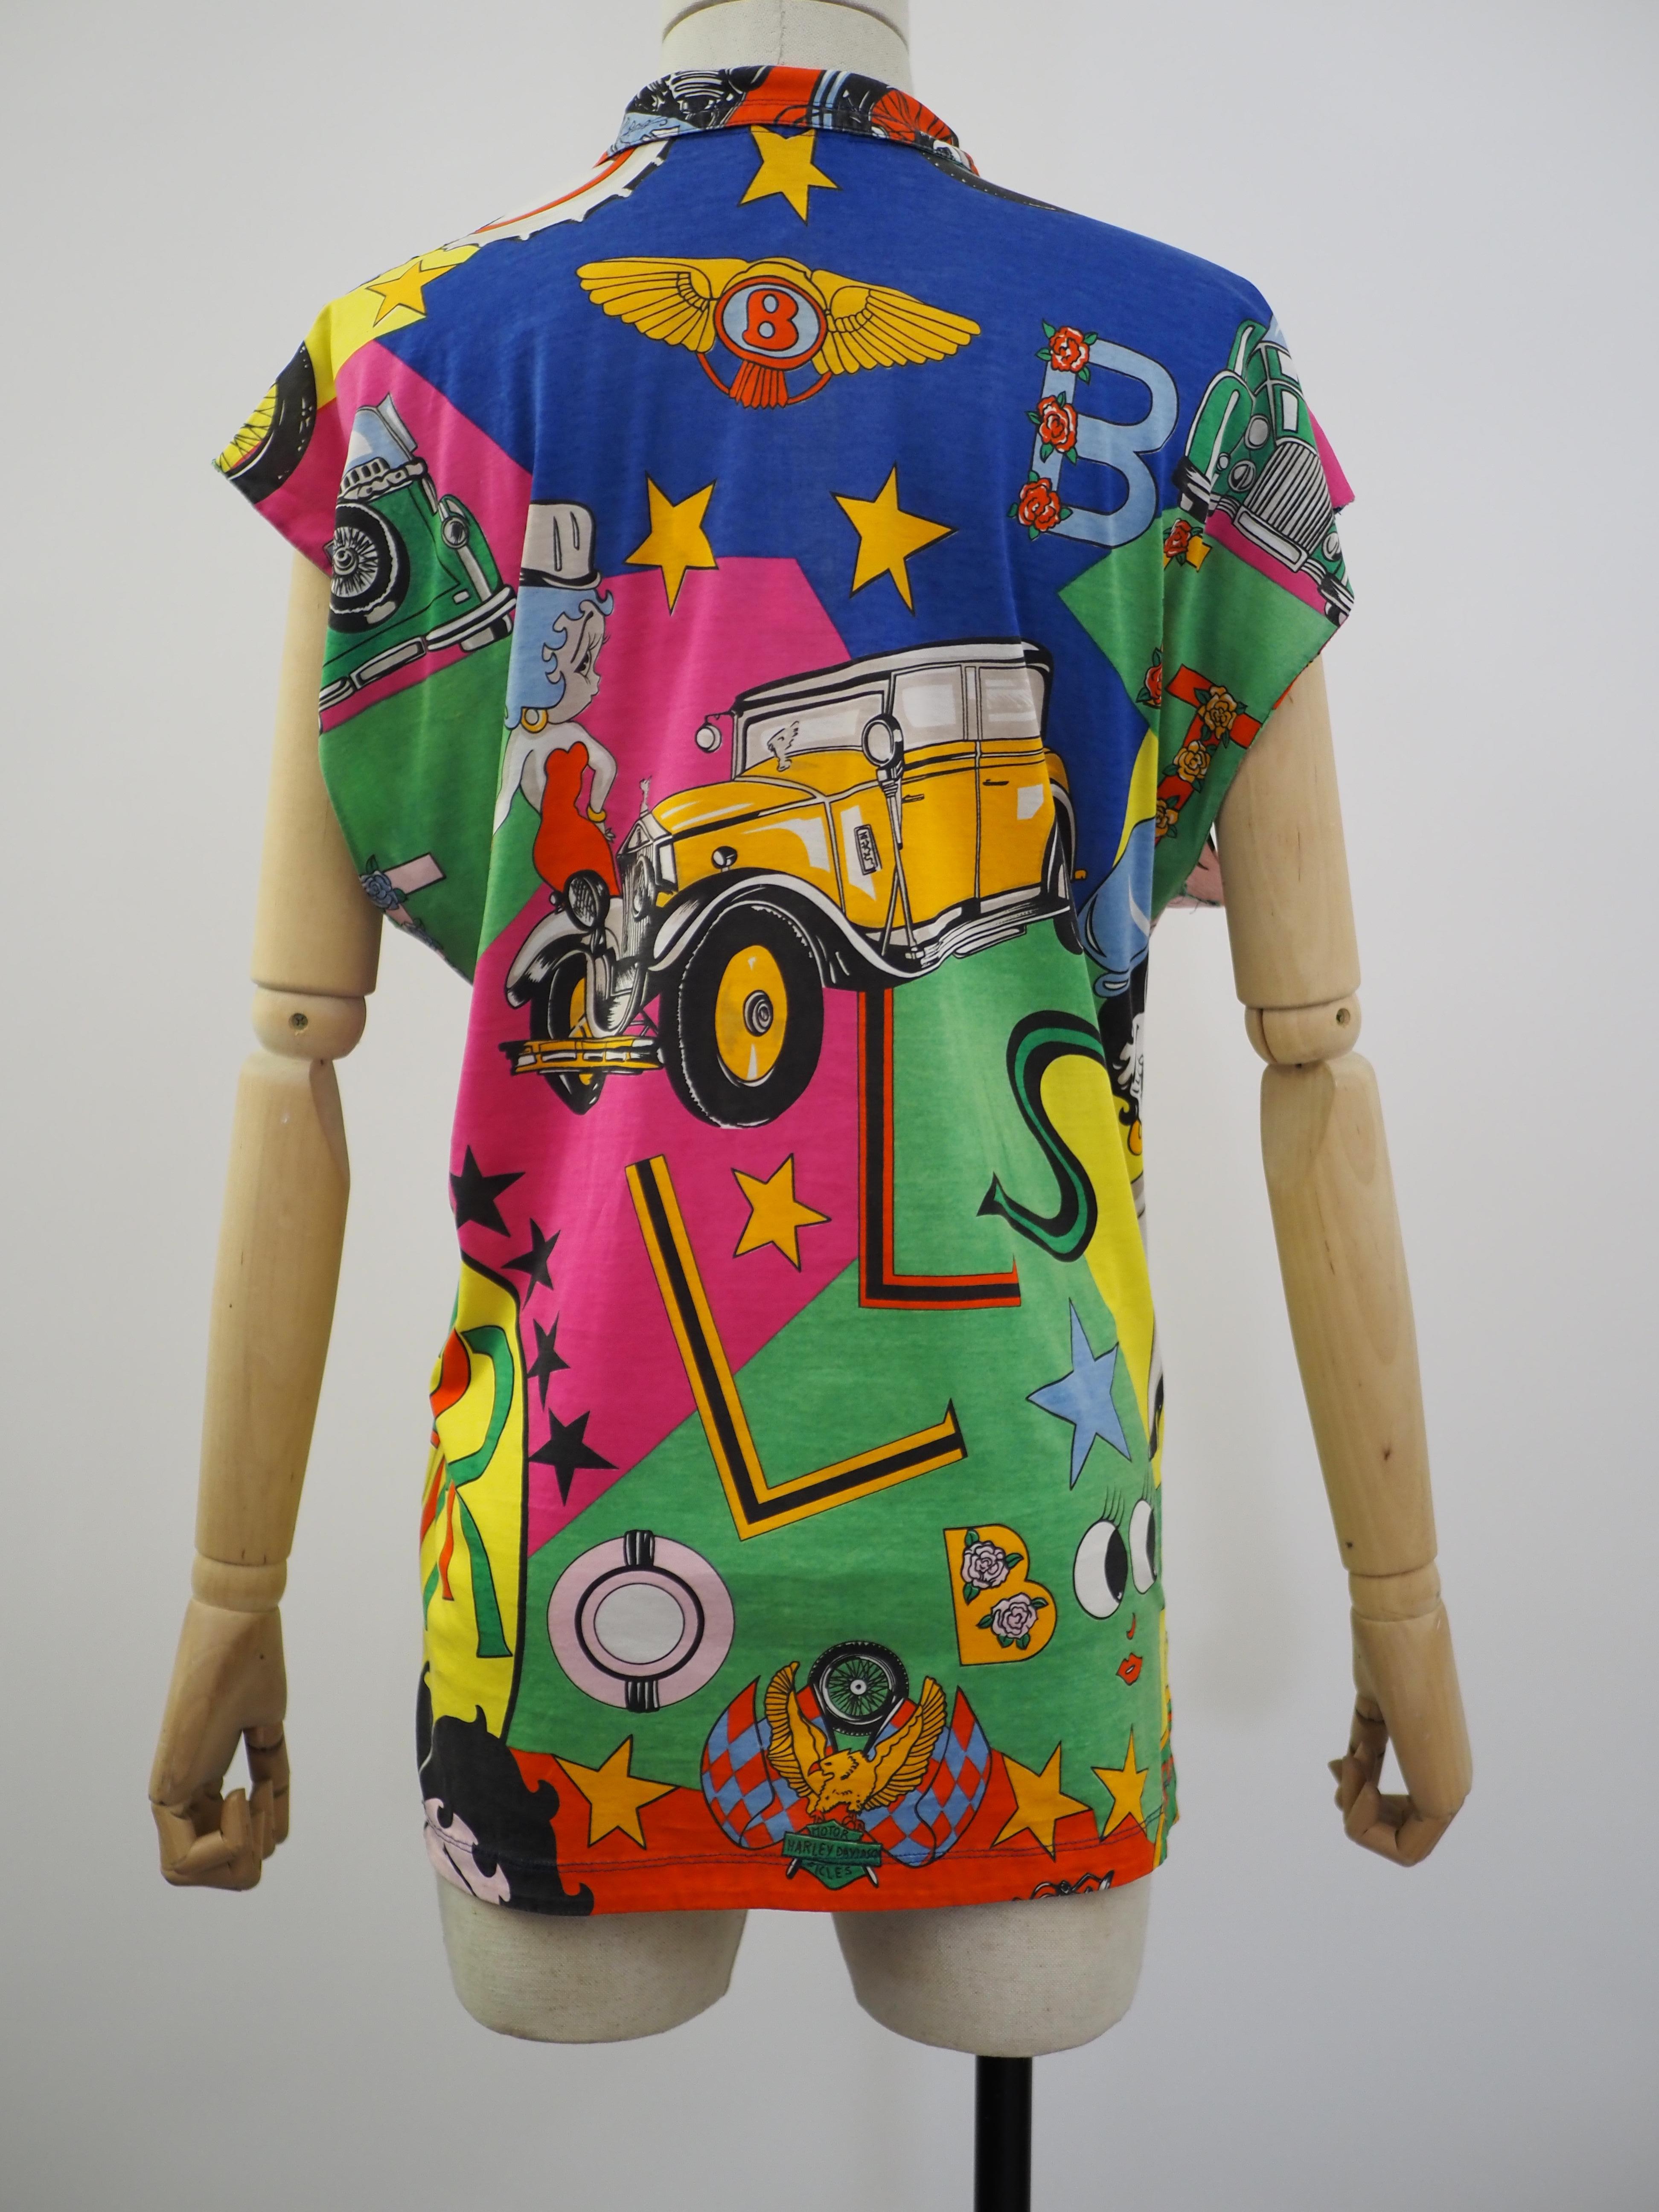 Gianni Versace pop art Betty Boop shirt For Sale 1